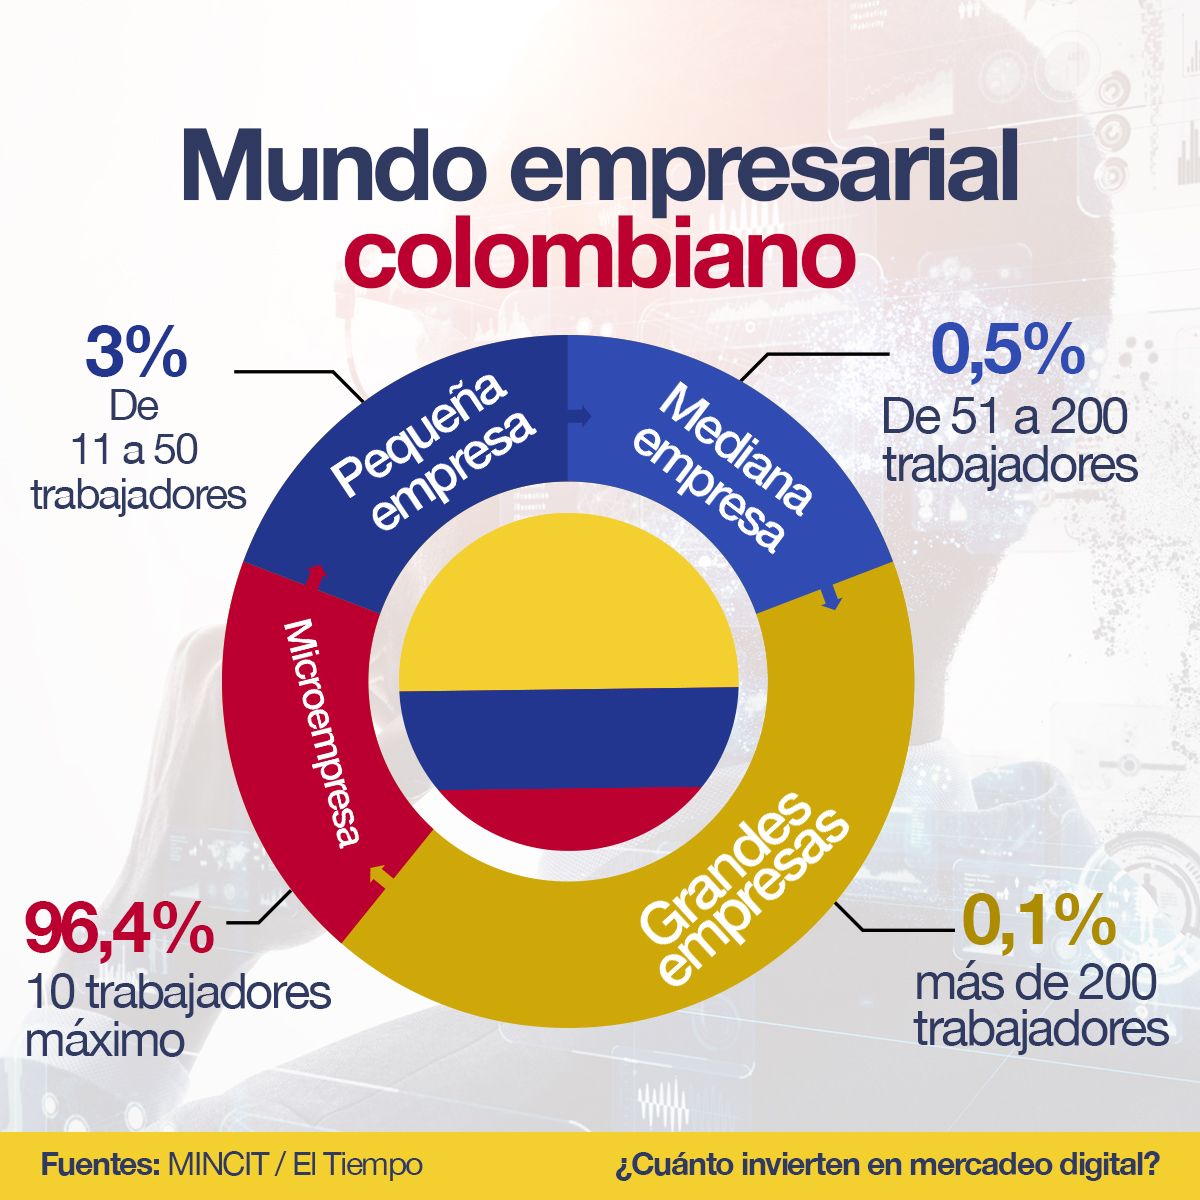 Mundo empresarial colombiano Microempresa 96,4% 10 trabajadores máximo Pequeña Empresa 3% de 11 a 50 trabajadores Mediana Empresa 0,5% de 51 a 200 trabajadores Grandes Empresas 0,1% más de 200 trabajadores  Fuentes: MINCIT El Tiempo  ¿Cuánto invierten en